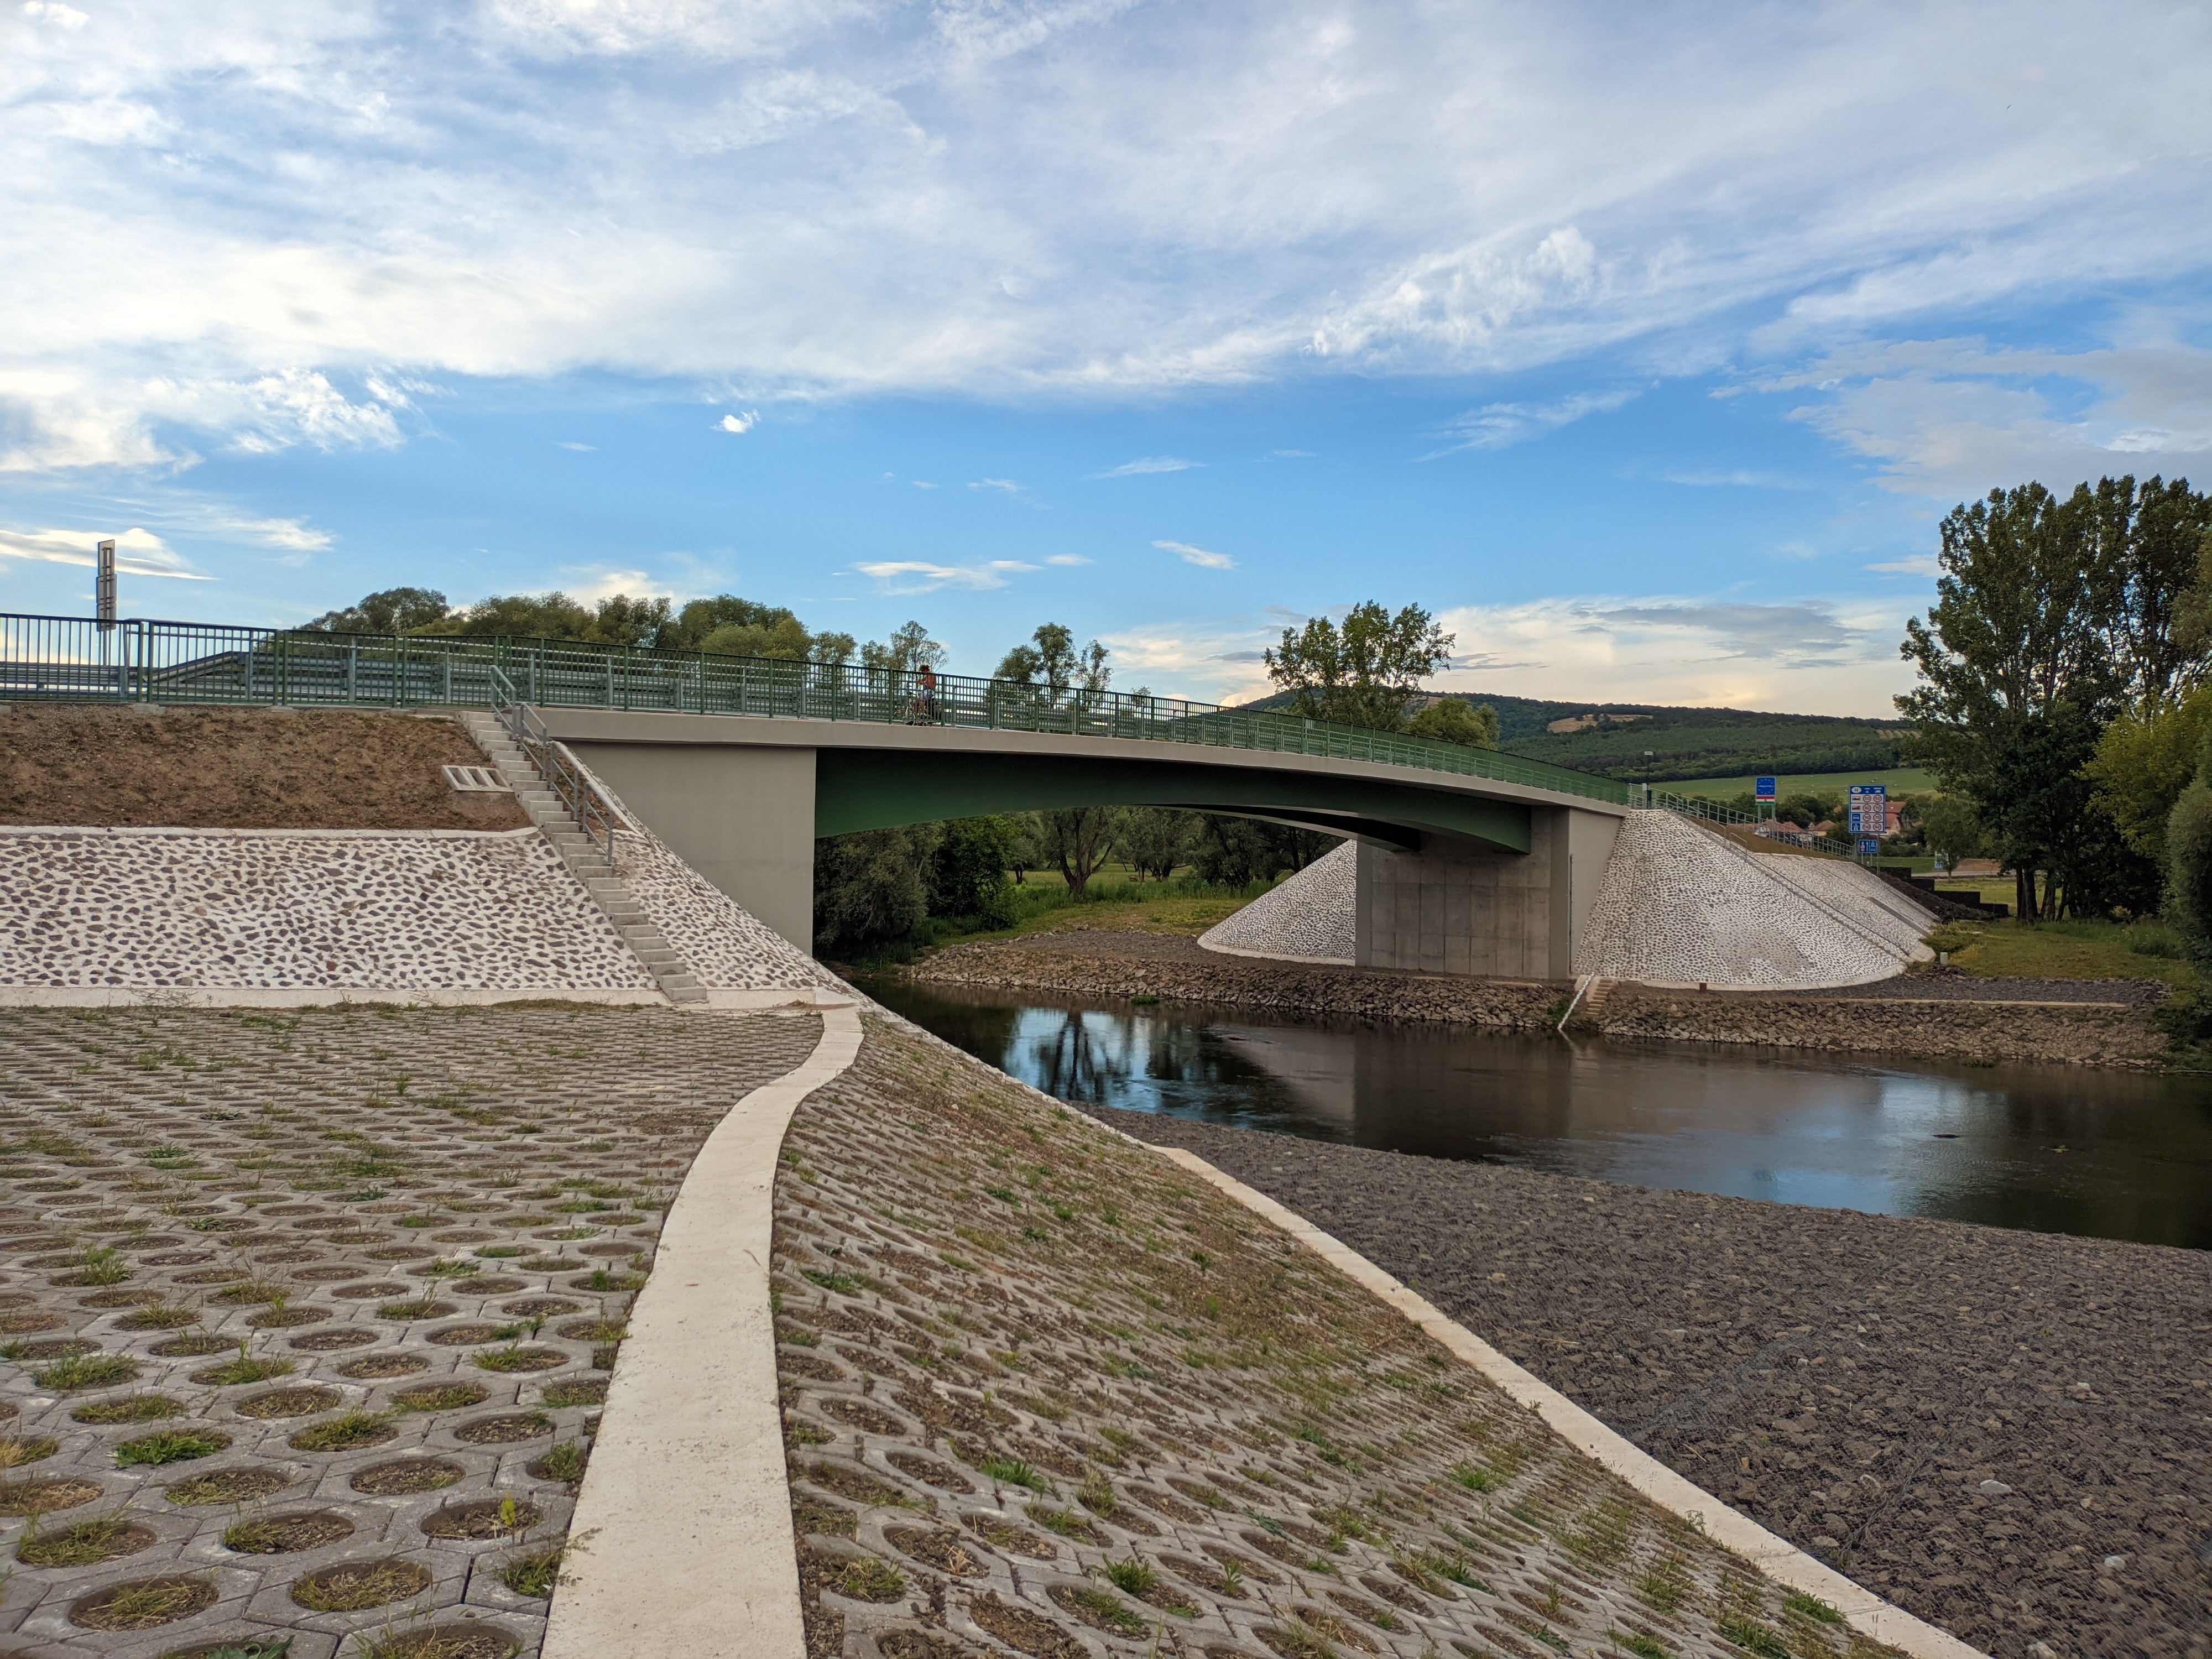 Elkészült a Károly Róbert híd – Ezután jóval egyszerűbben járhatjuk be a Dunakanyart